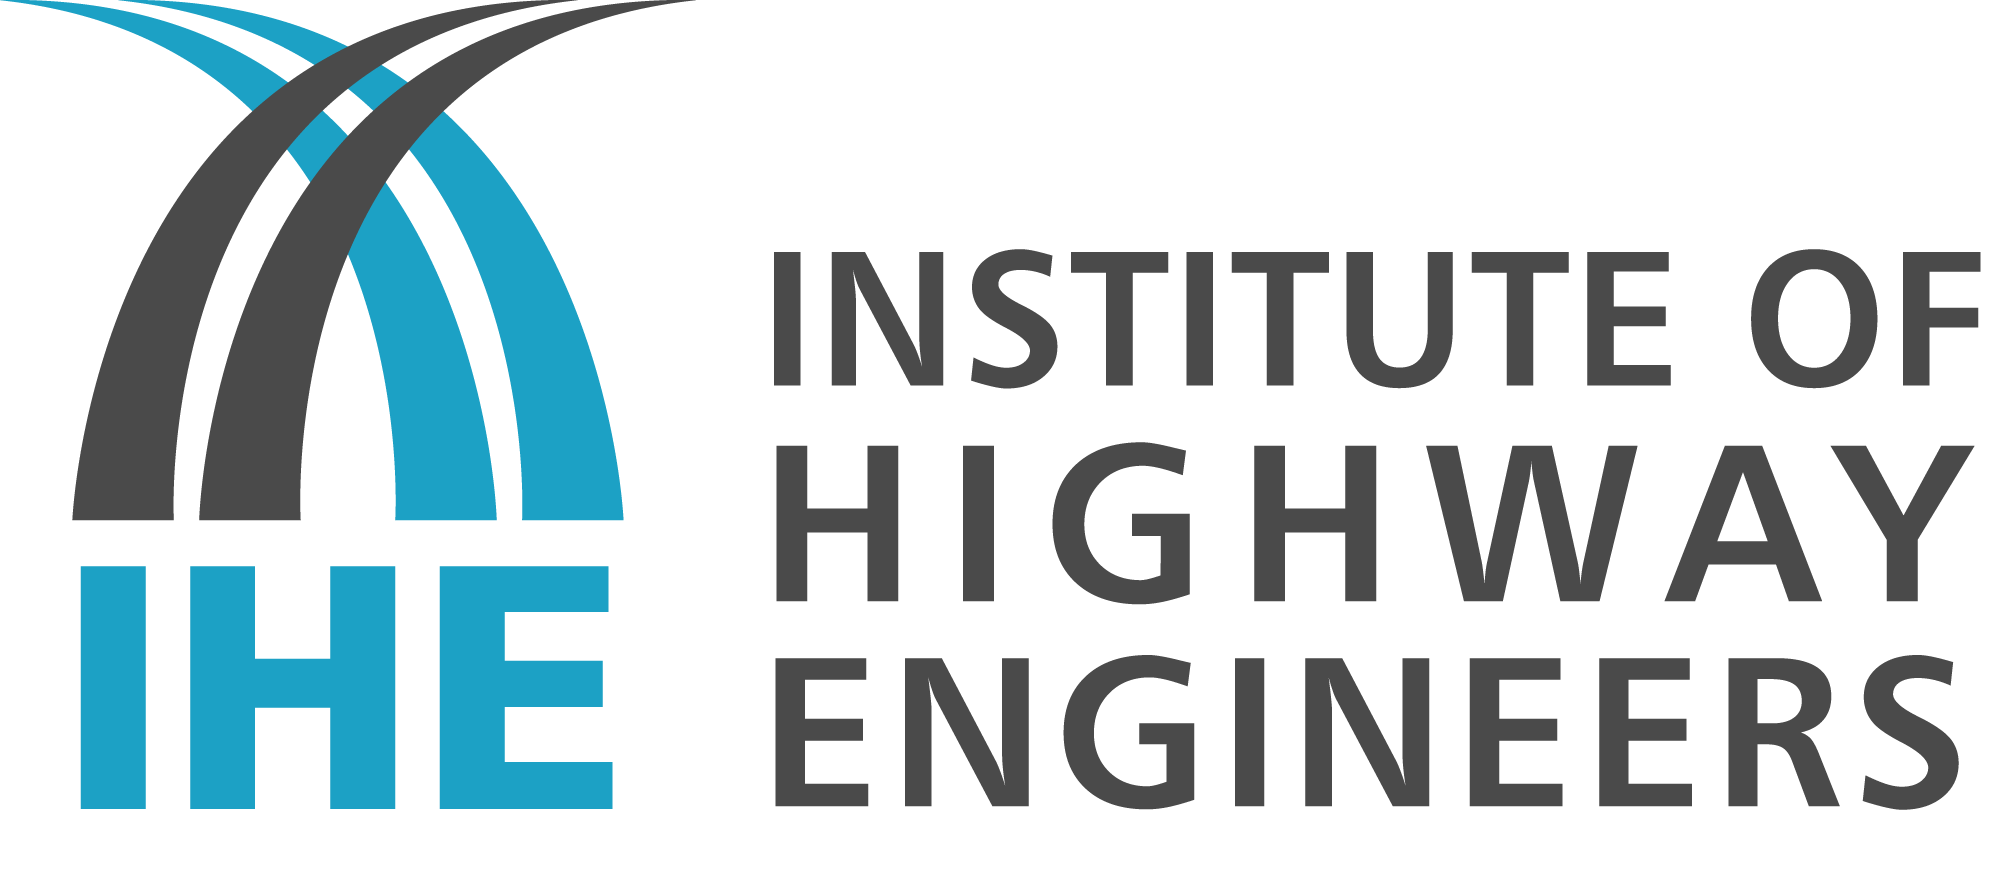 IHE logo